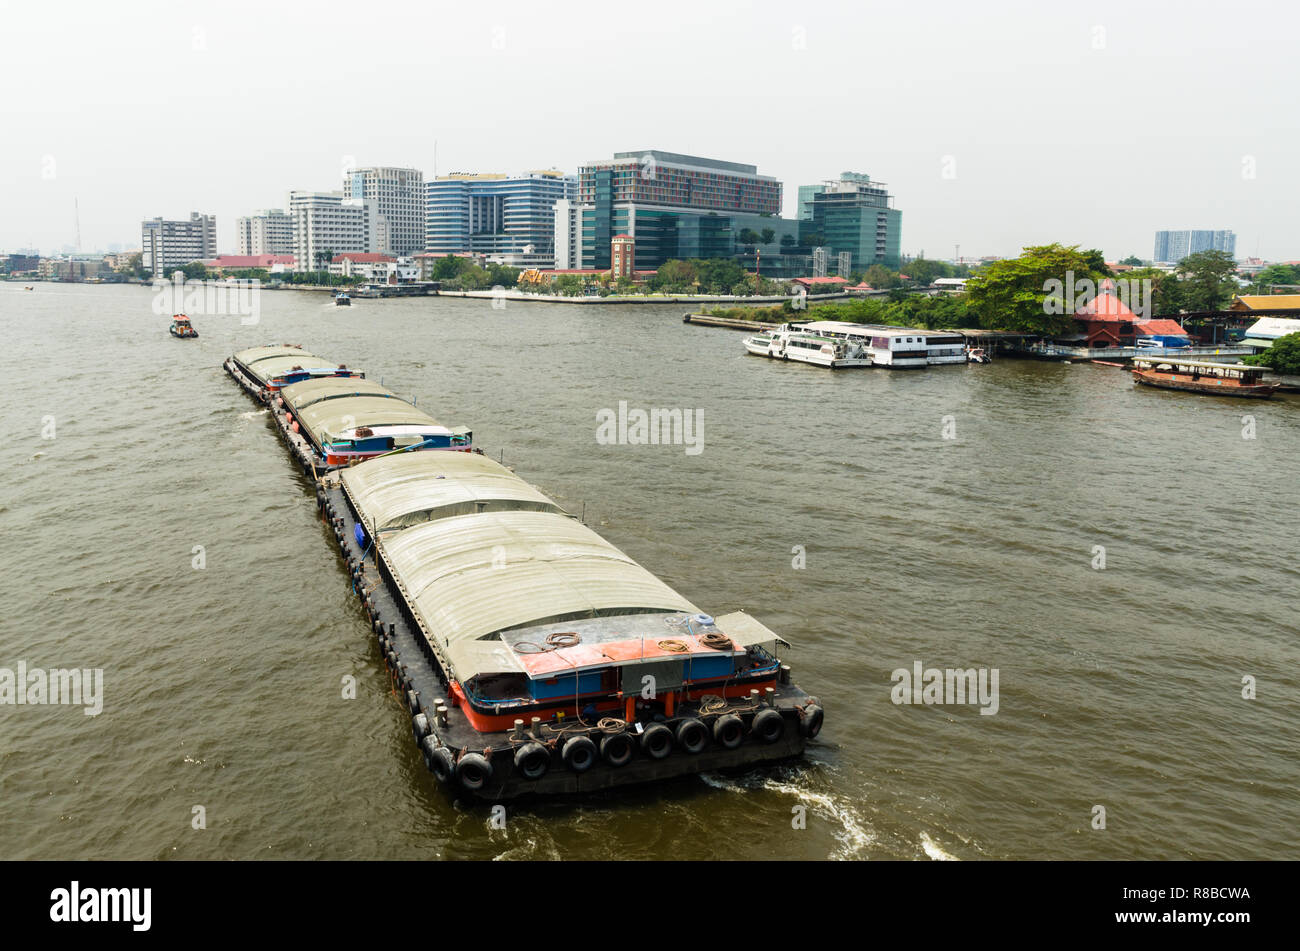 Tugboat towing a barge on Chao Phraya river, Bangkok, Thailand Stock Photo